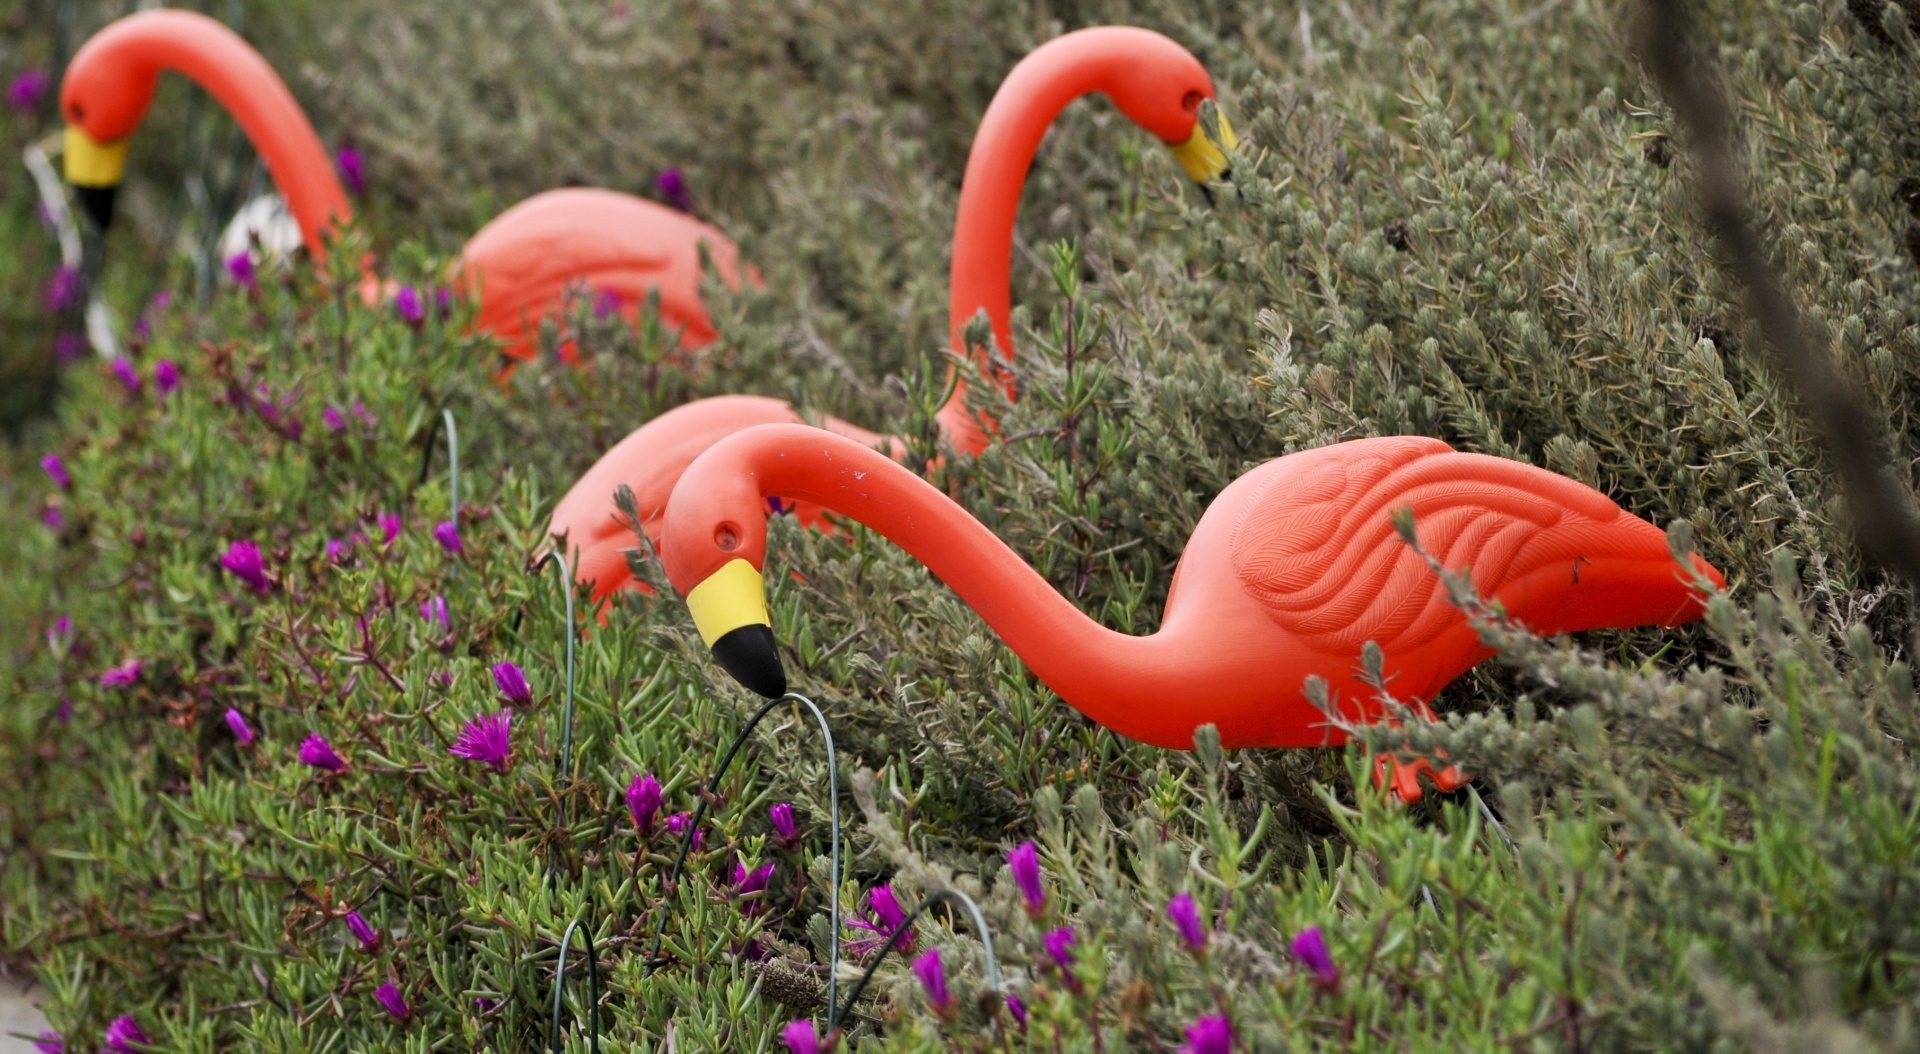 Plastic Flamingos